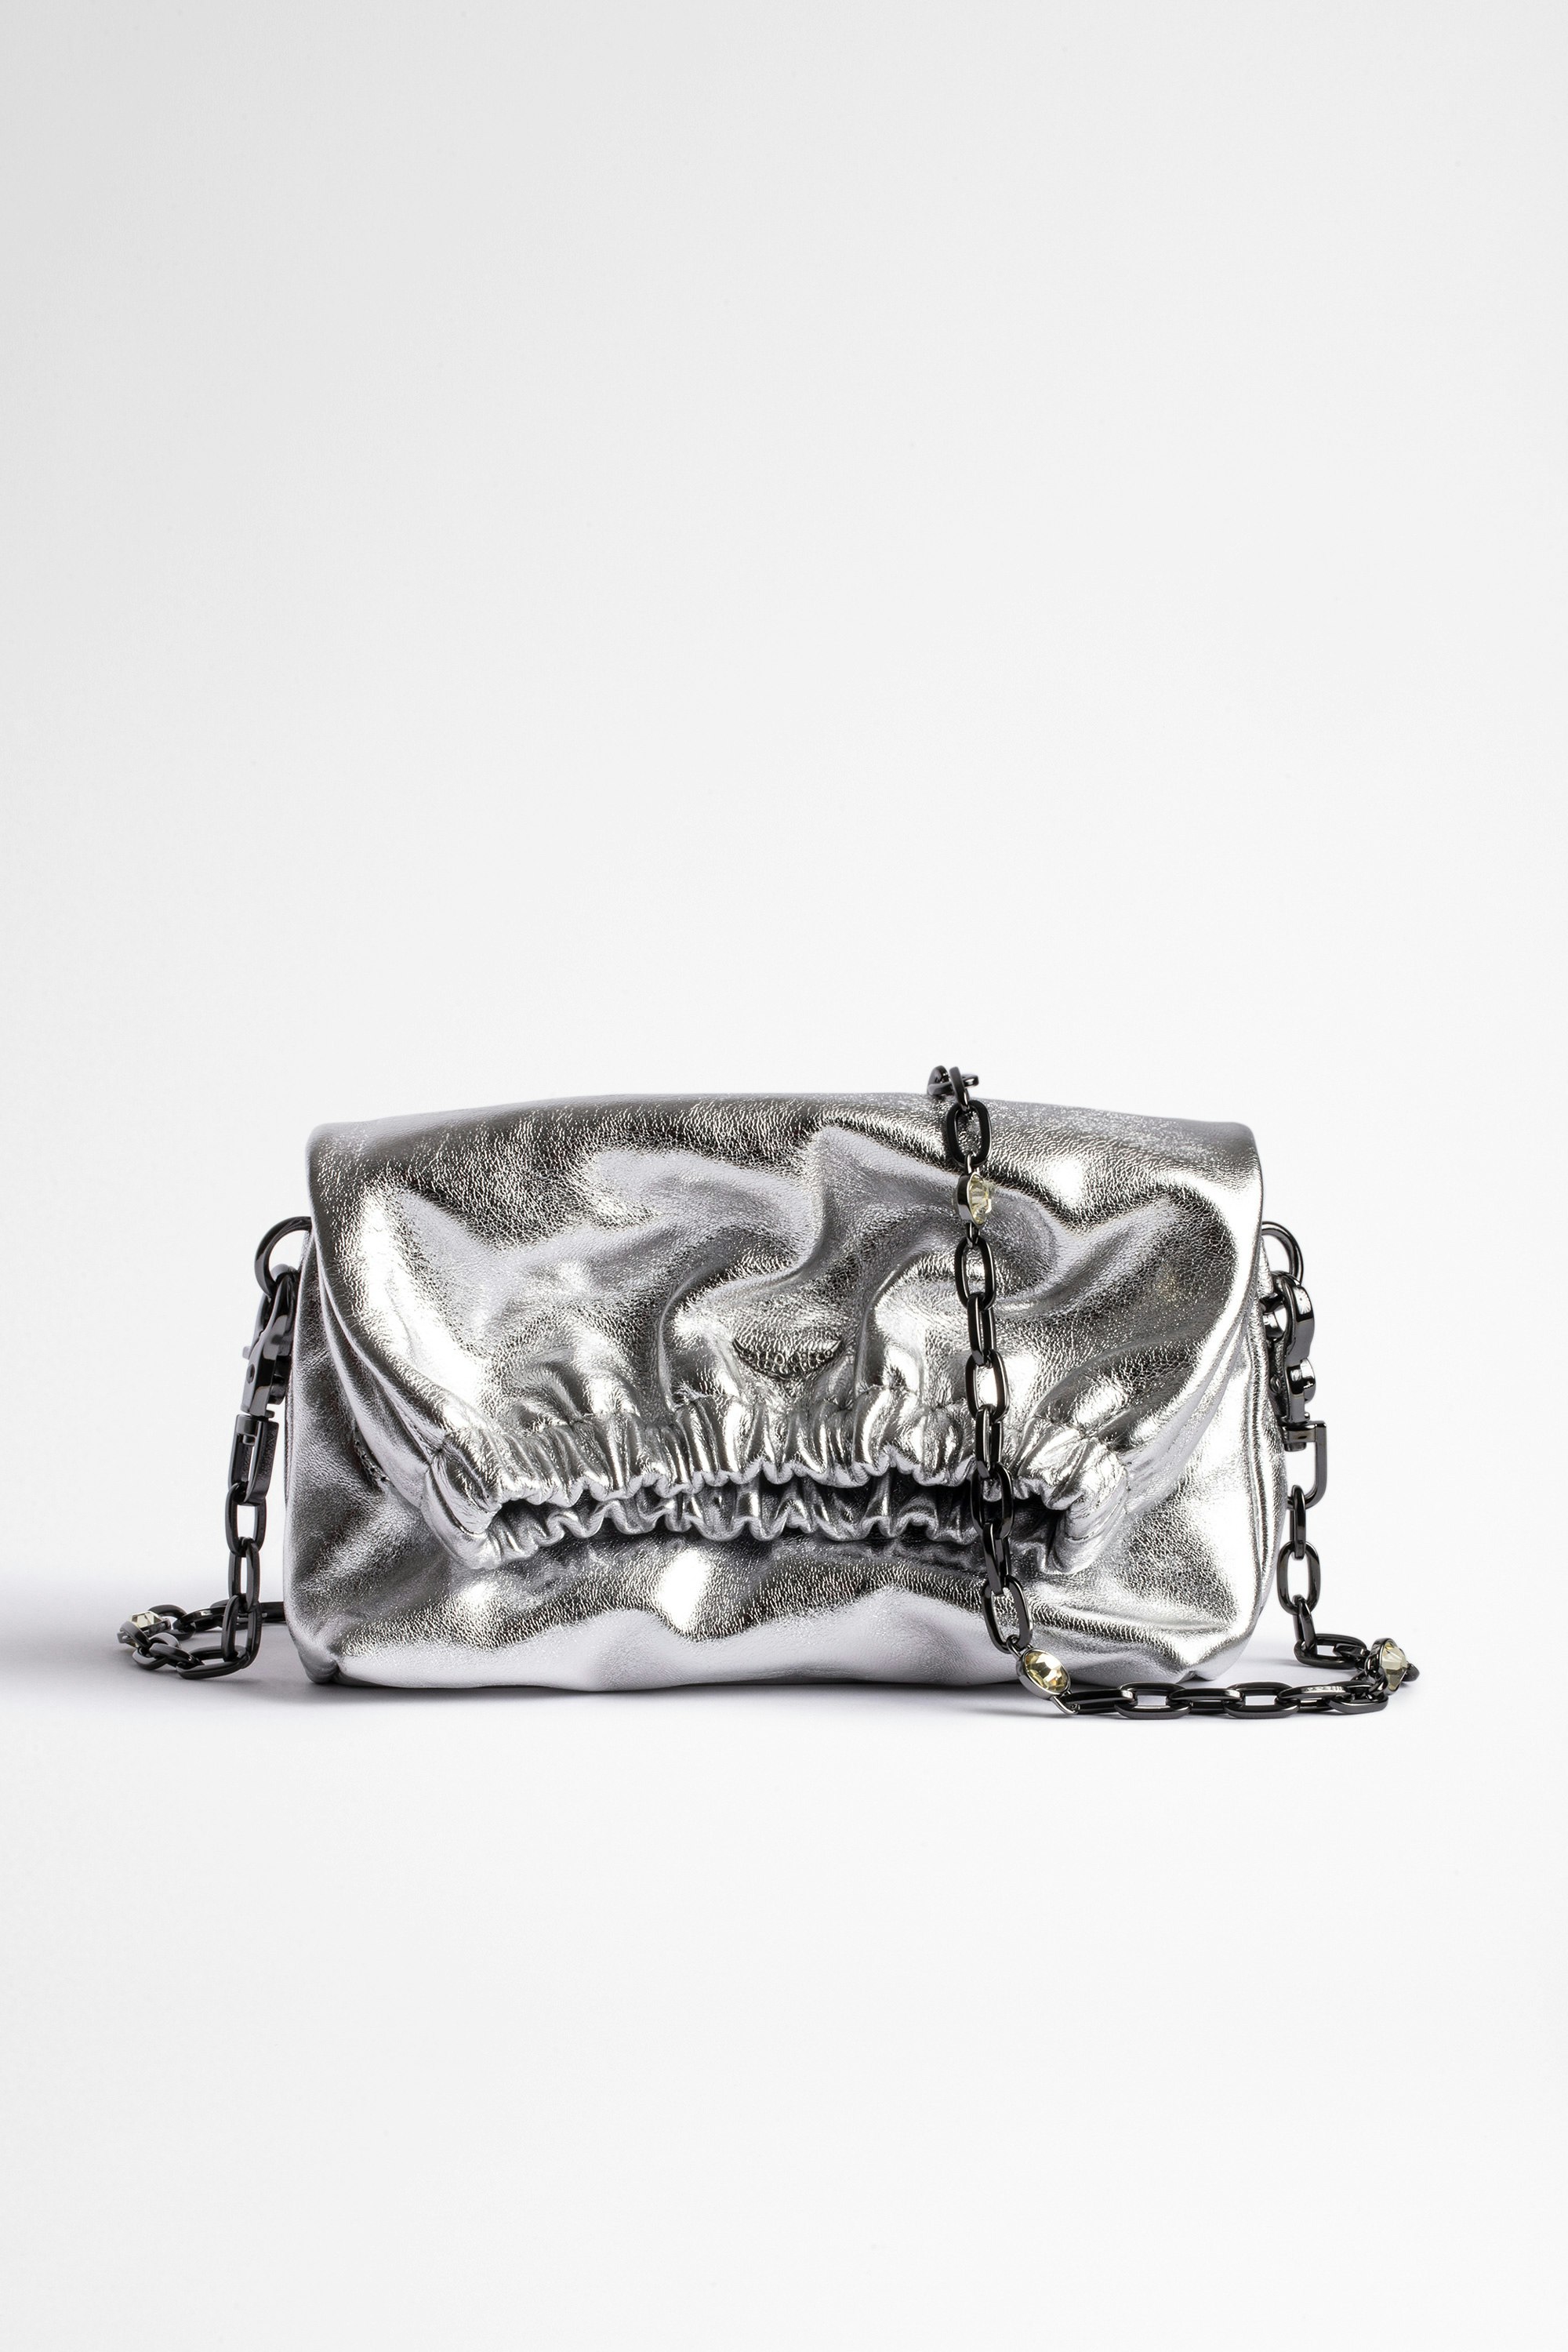 Tasche Rockyssime XS Metallic Damen-Clutch aus silbernem Lammleder mit silbernem Kettengriff